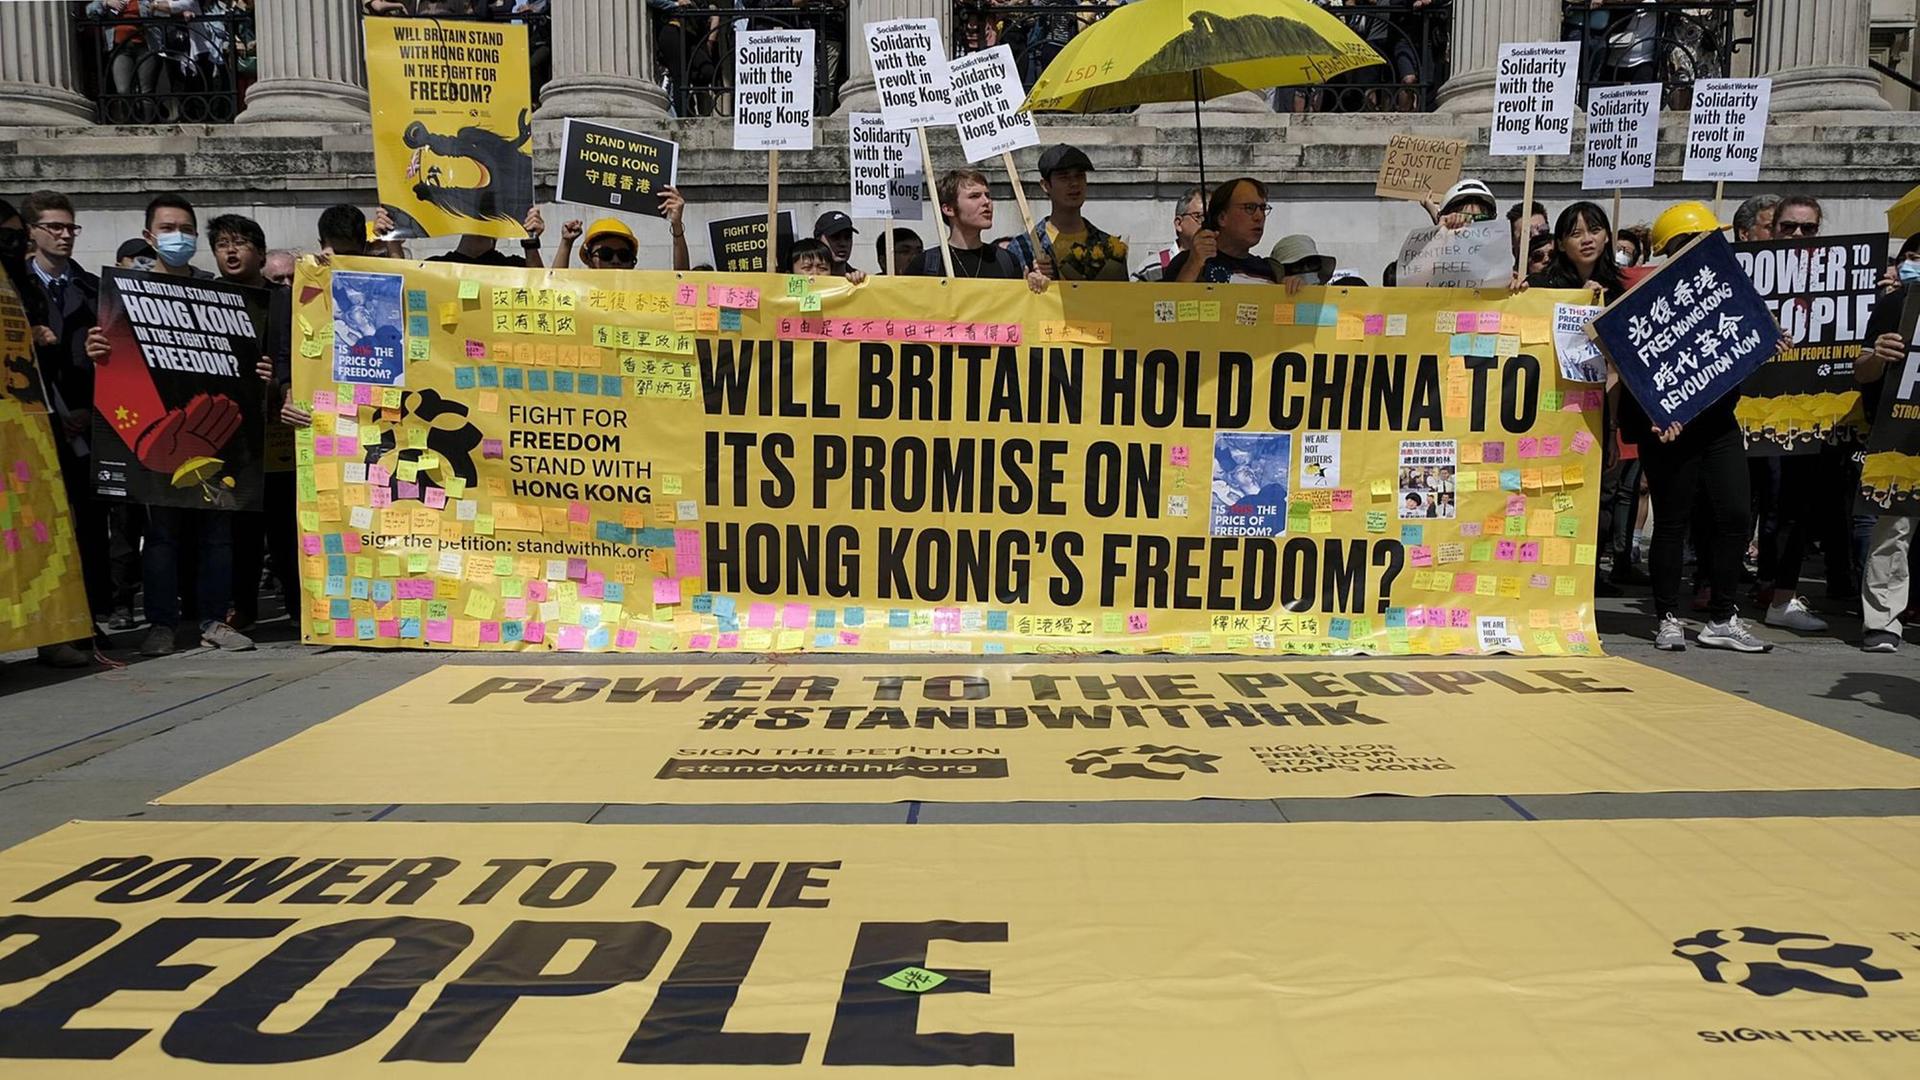 Demonstration in London am 17. August 2019 für Demokratie und Gerechtigkeit in Hongkong. Demonstranten halten Spruchbänder mit der Aufschrift "WILL BRITAIN HOLD CHINA TO IT'S PROMISE ON HONG KONG'S FREEDOM?"